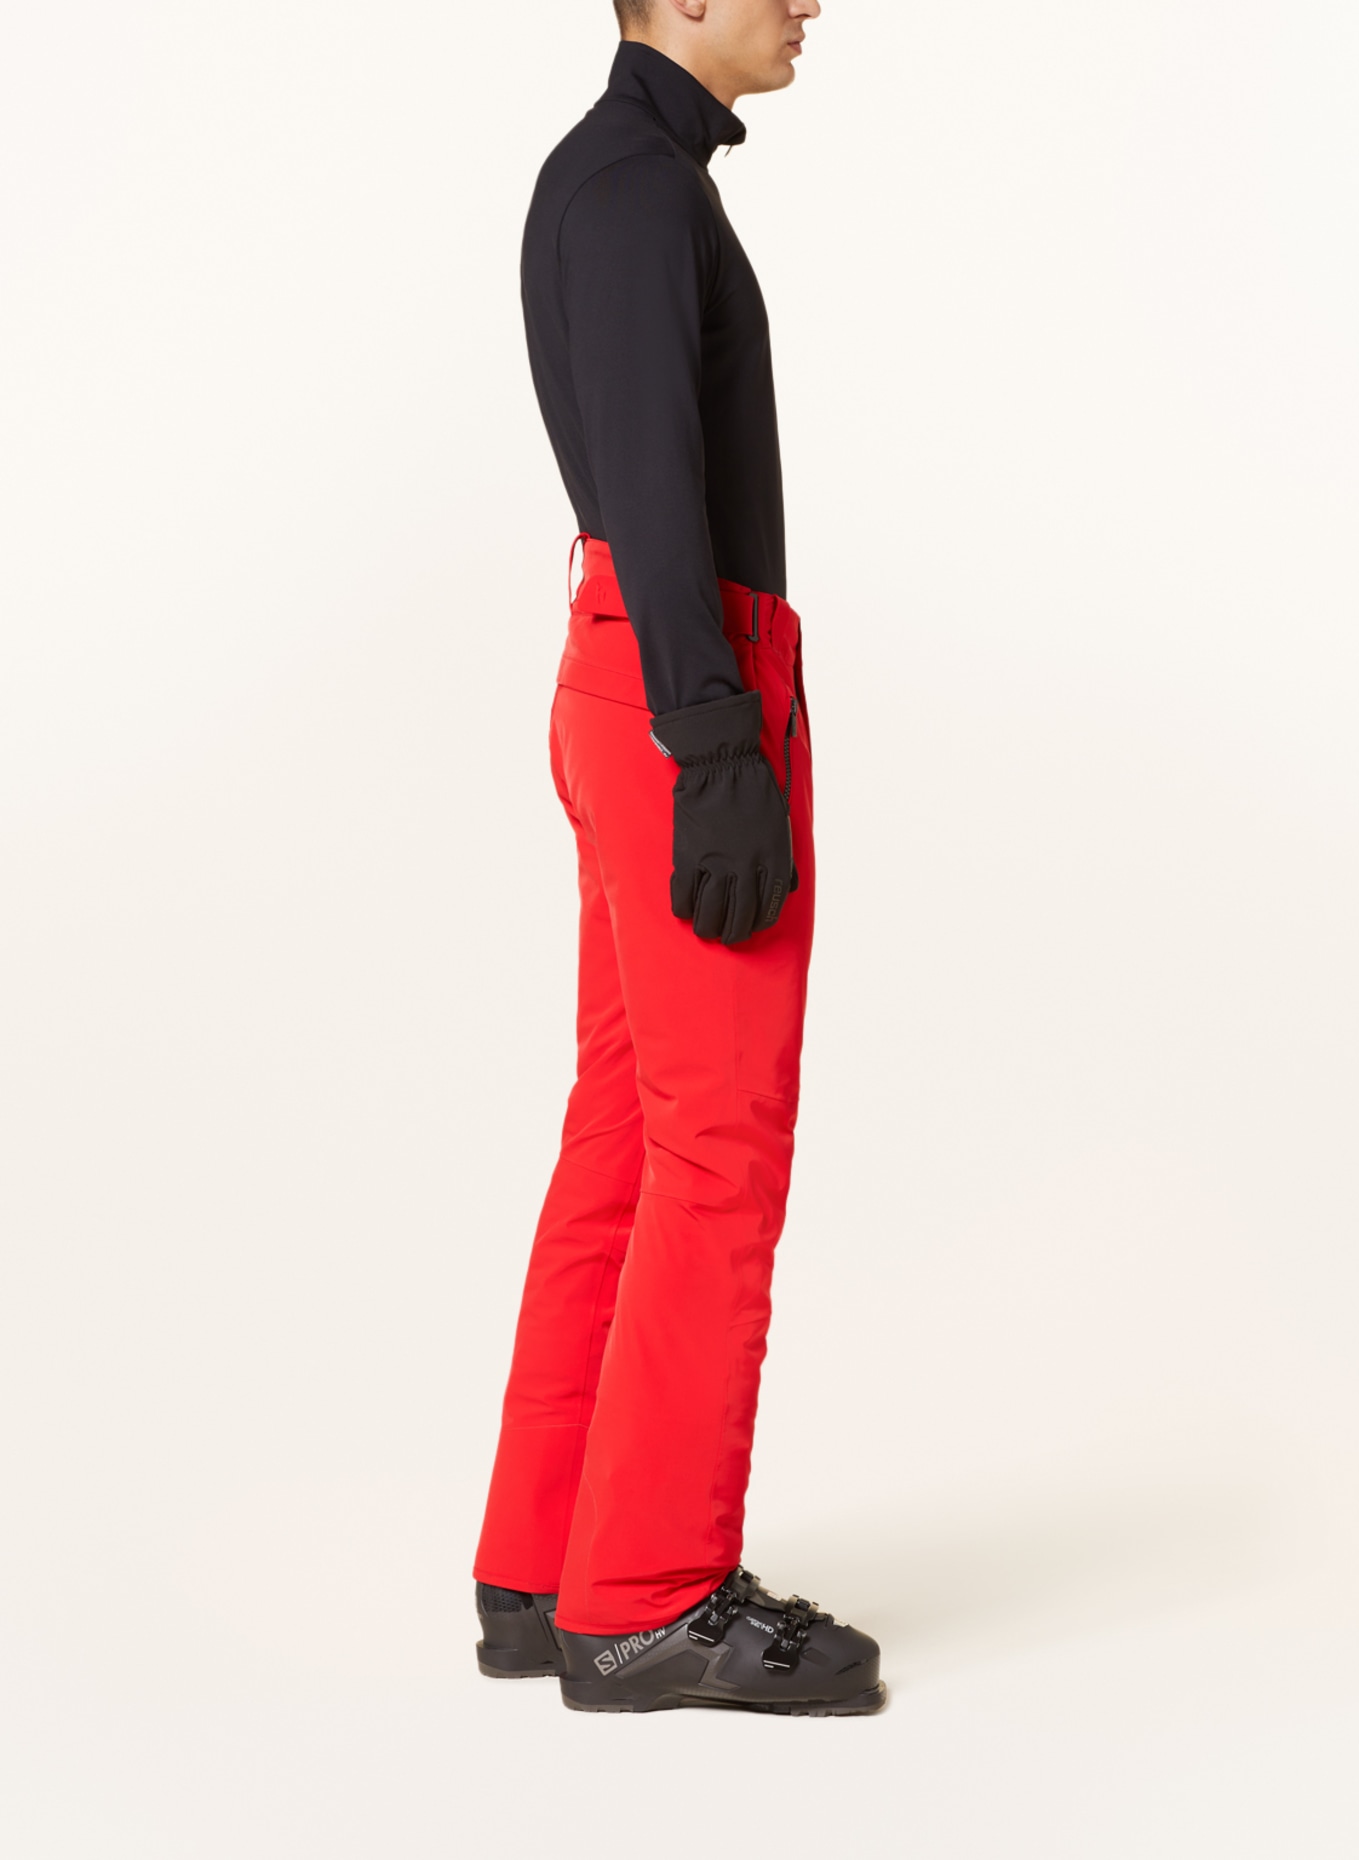 SALOMON red ski pants - スキー